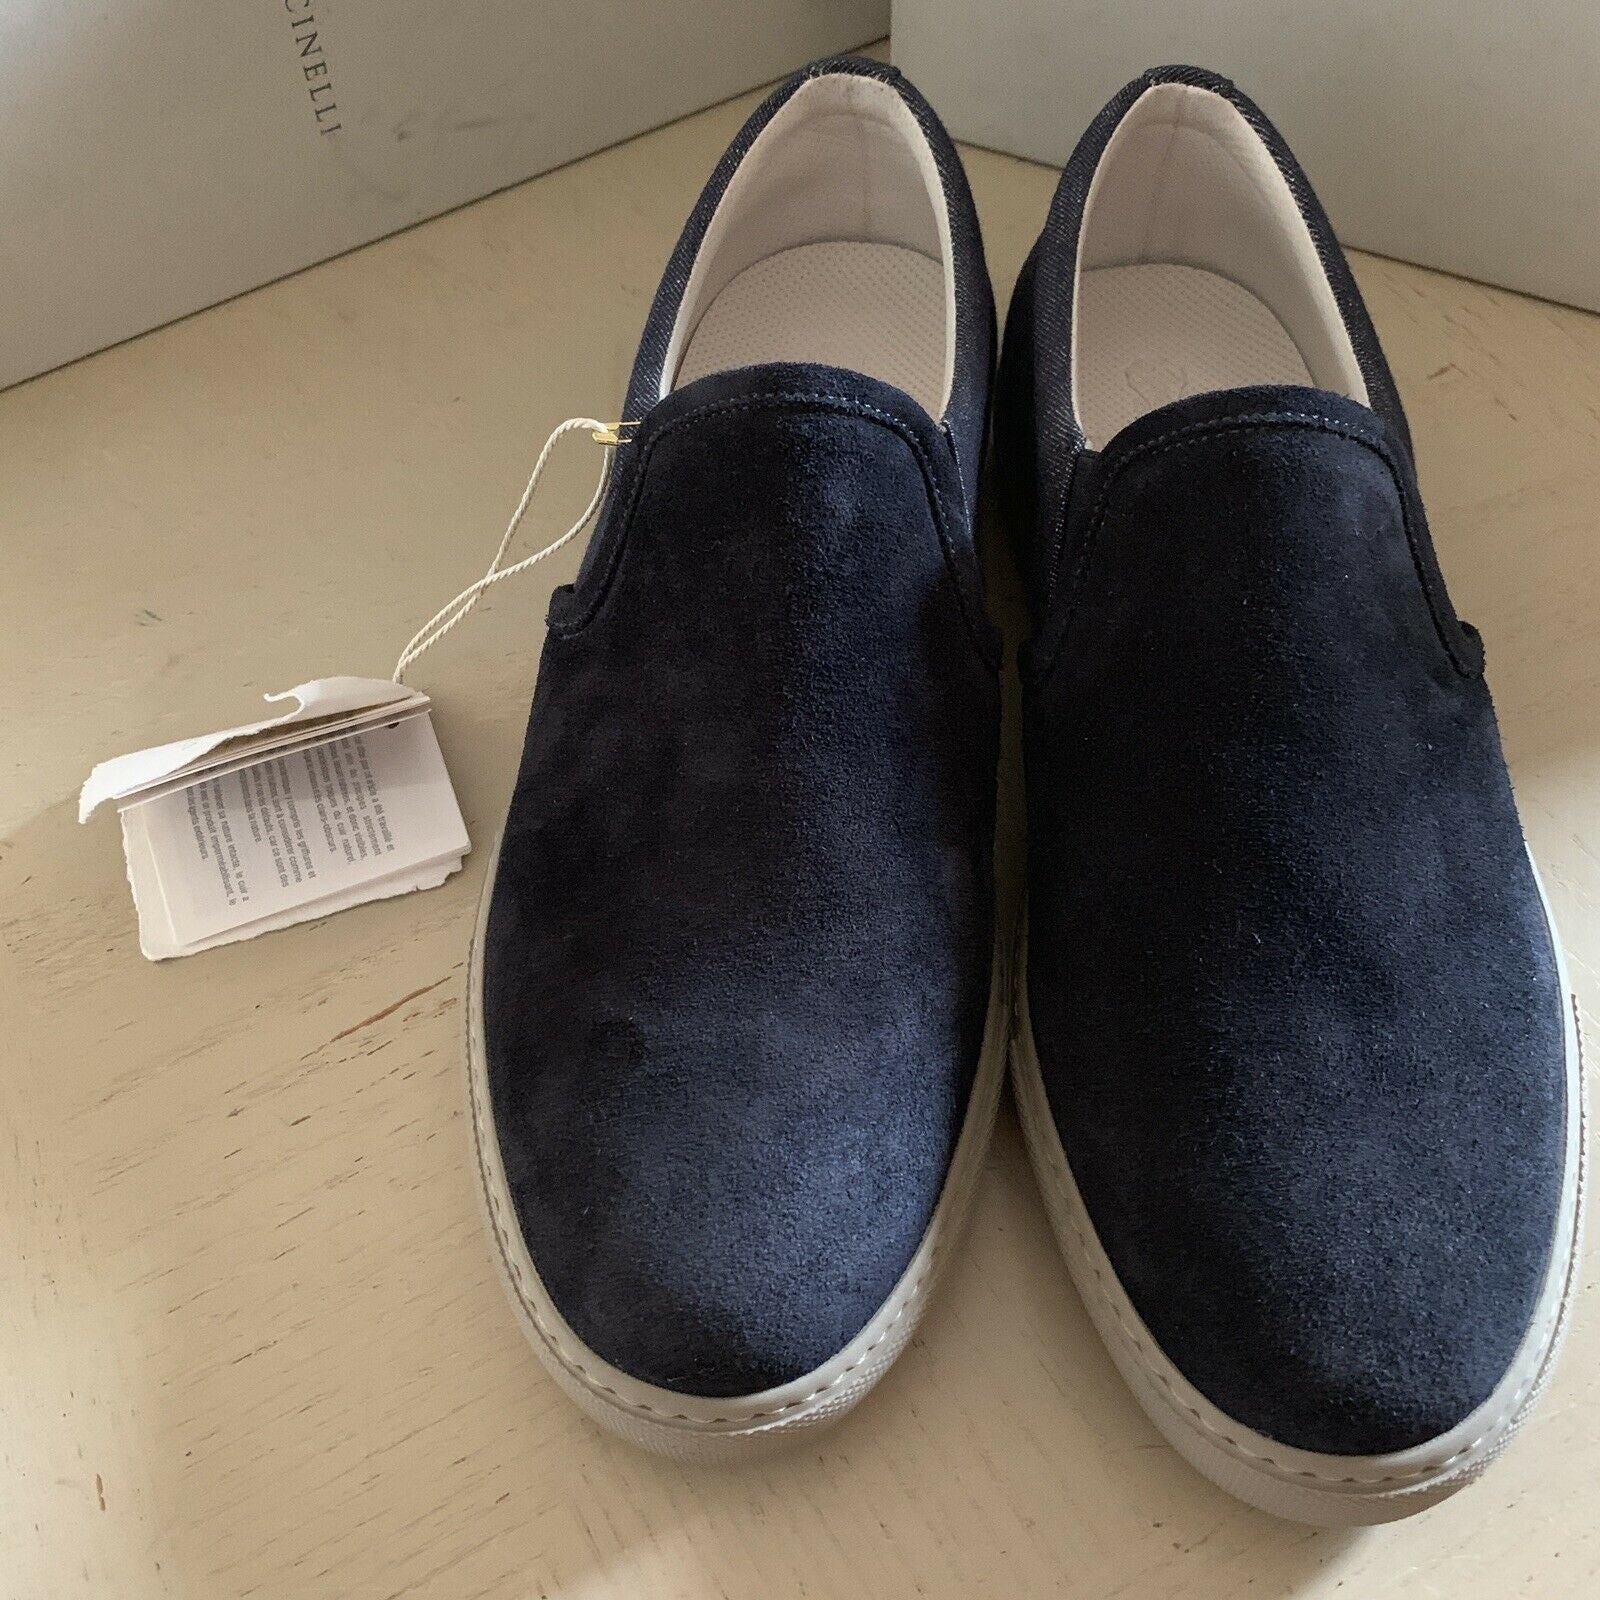 Neu $754 Brunello Cucinelli Herren Sneakers/Loafer Schuhe Farbe Blau 9 US / 42 Eu